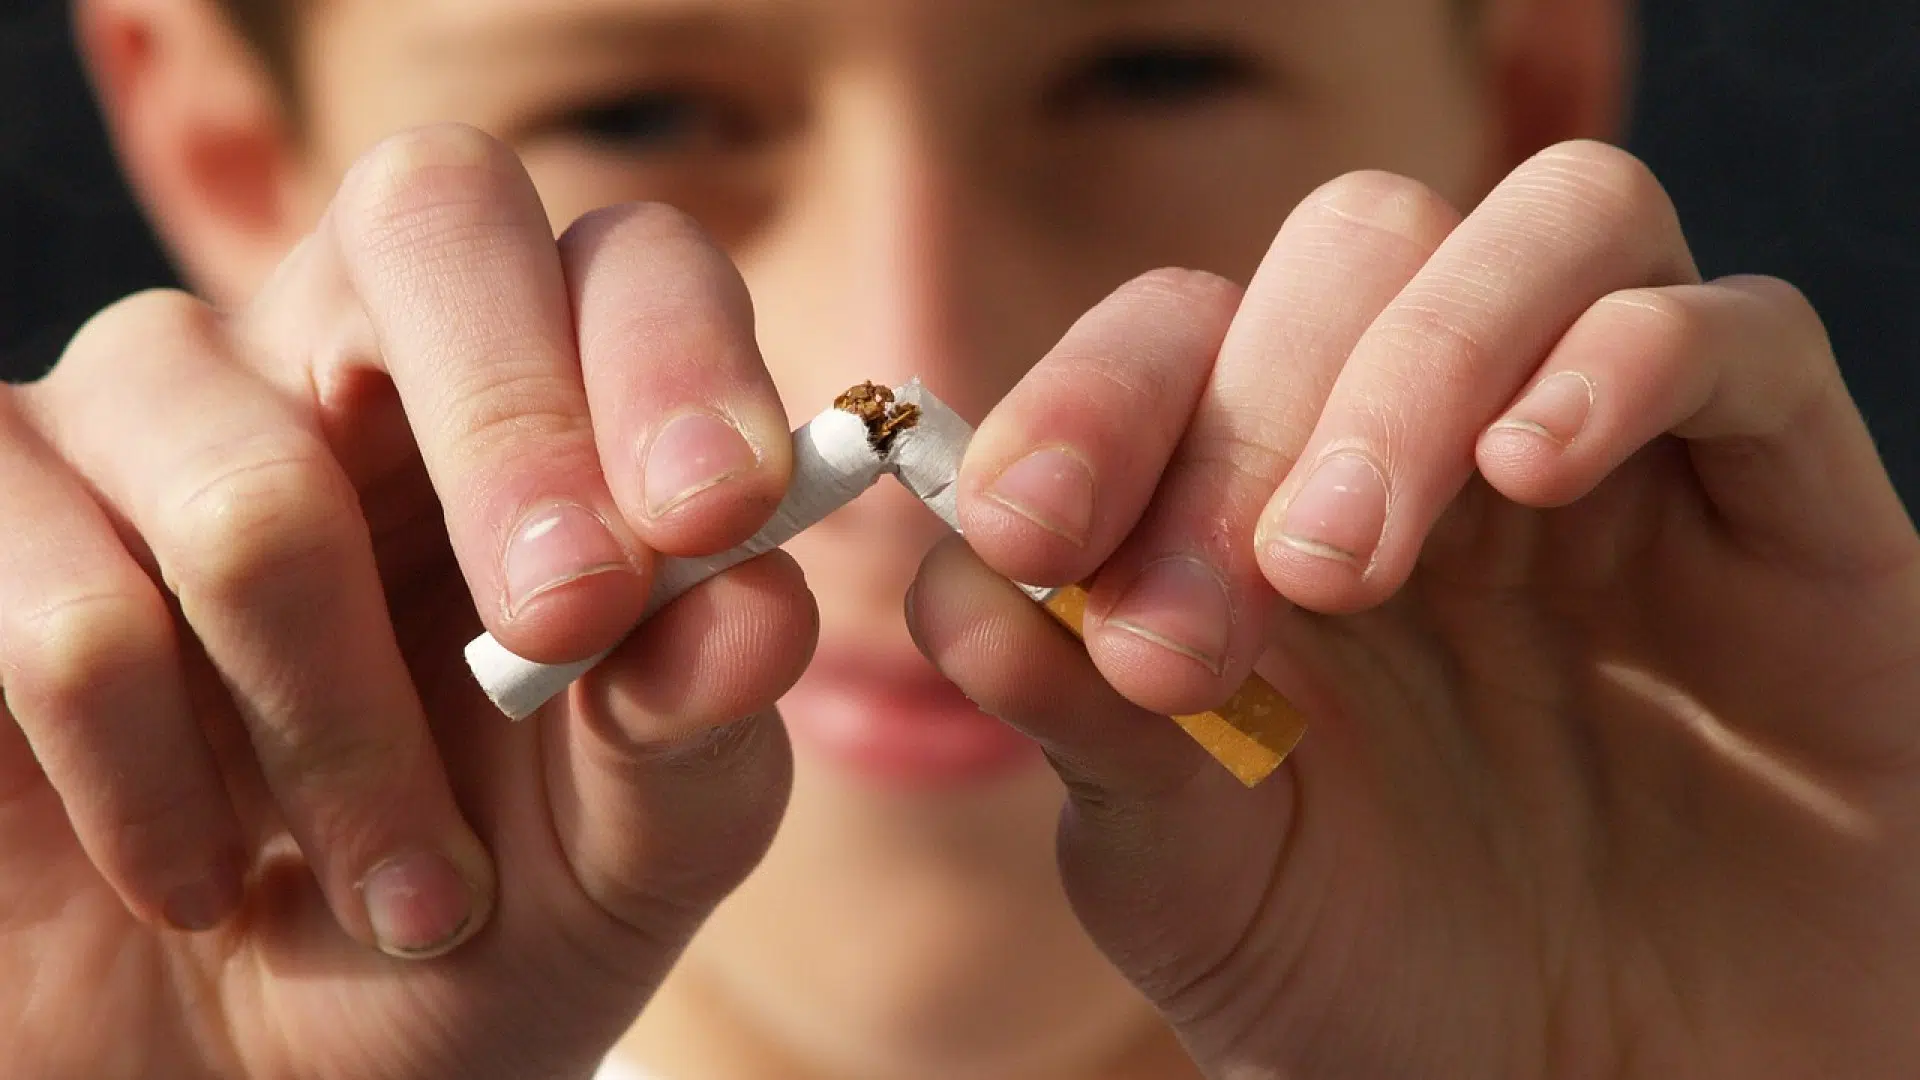 Quelle est la meilleure solution anti-tabac ?